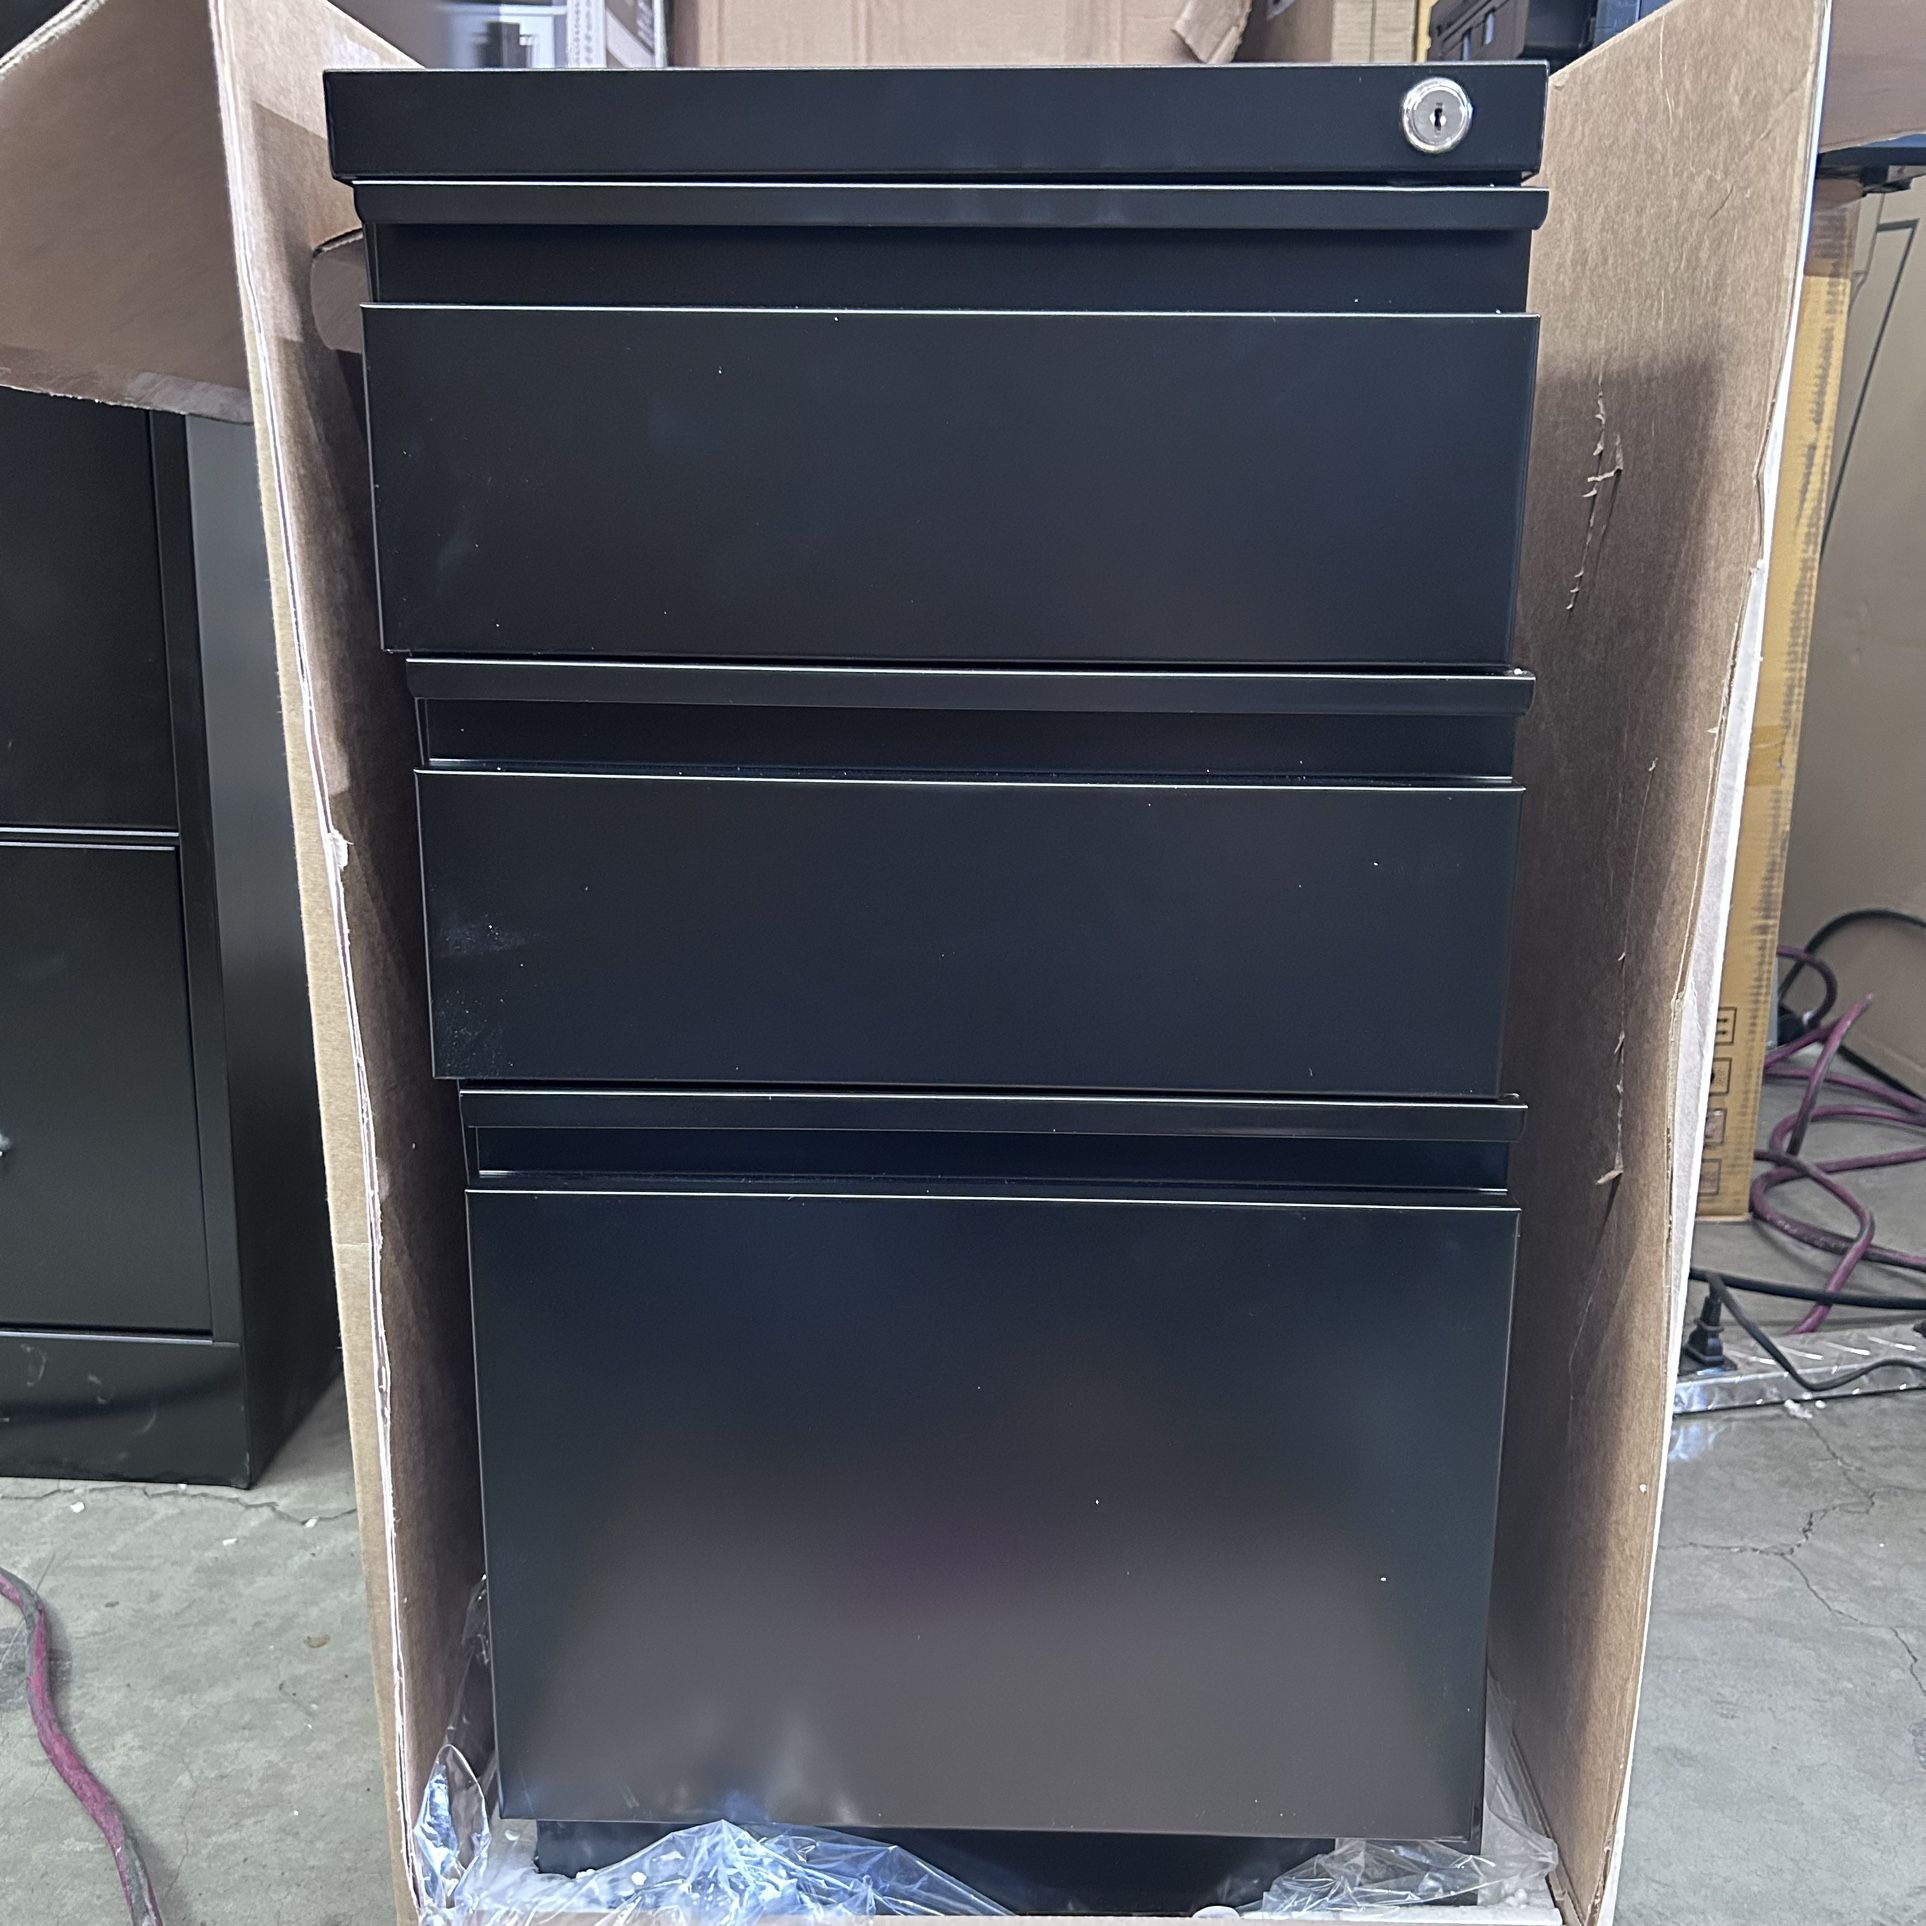 WorkPro 23" D Vertical 3-Drawer Mobile Pedestal File Cabinet, Black